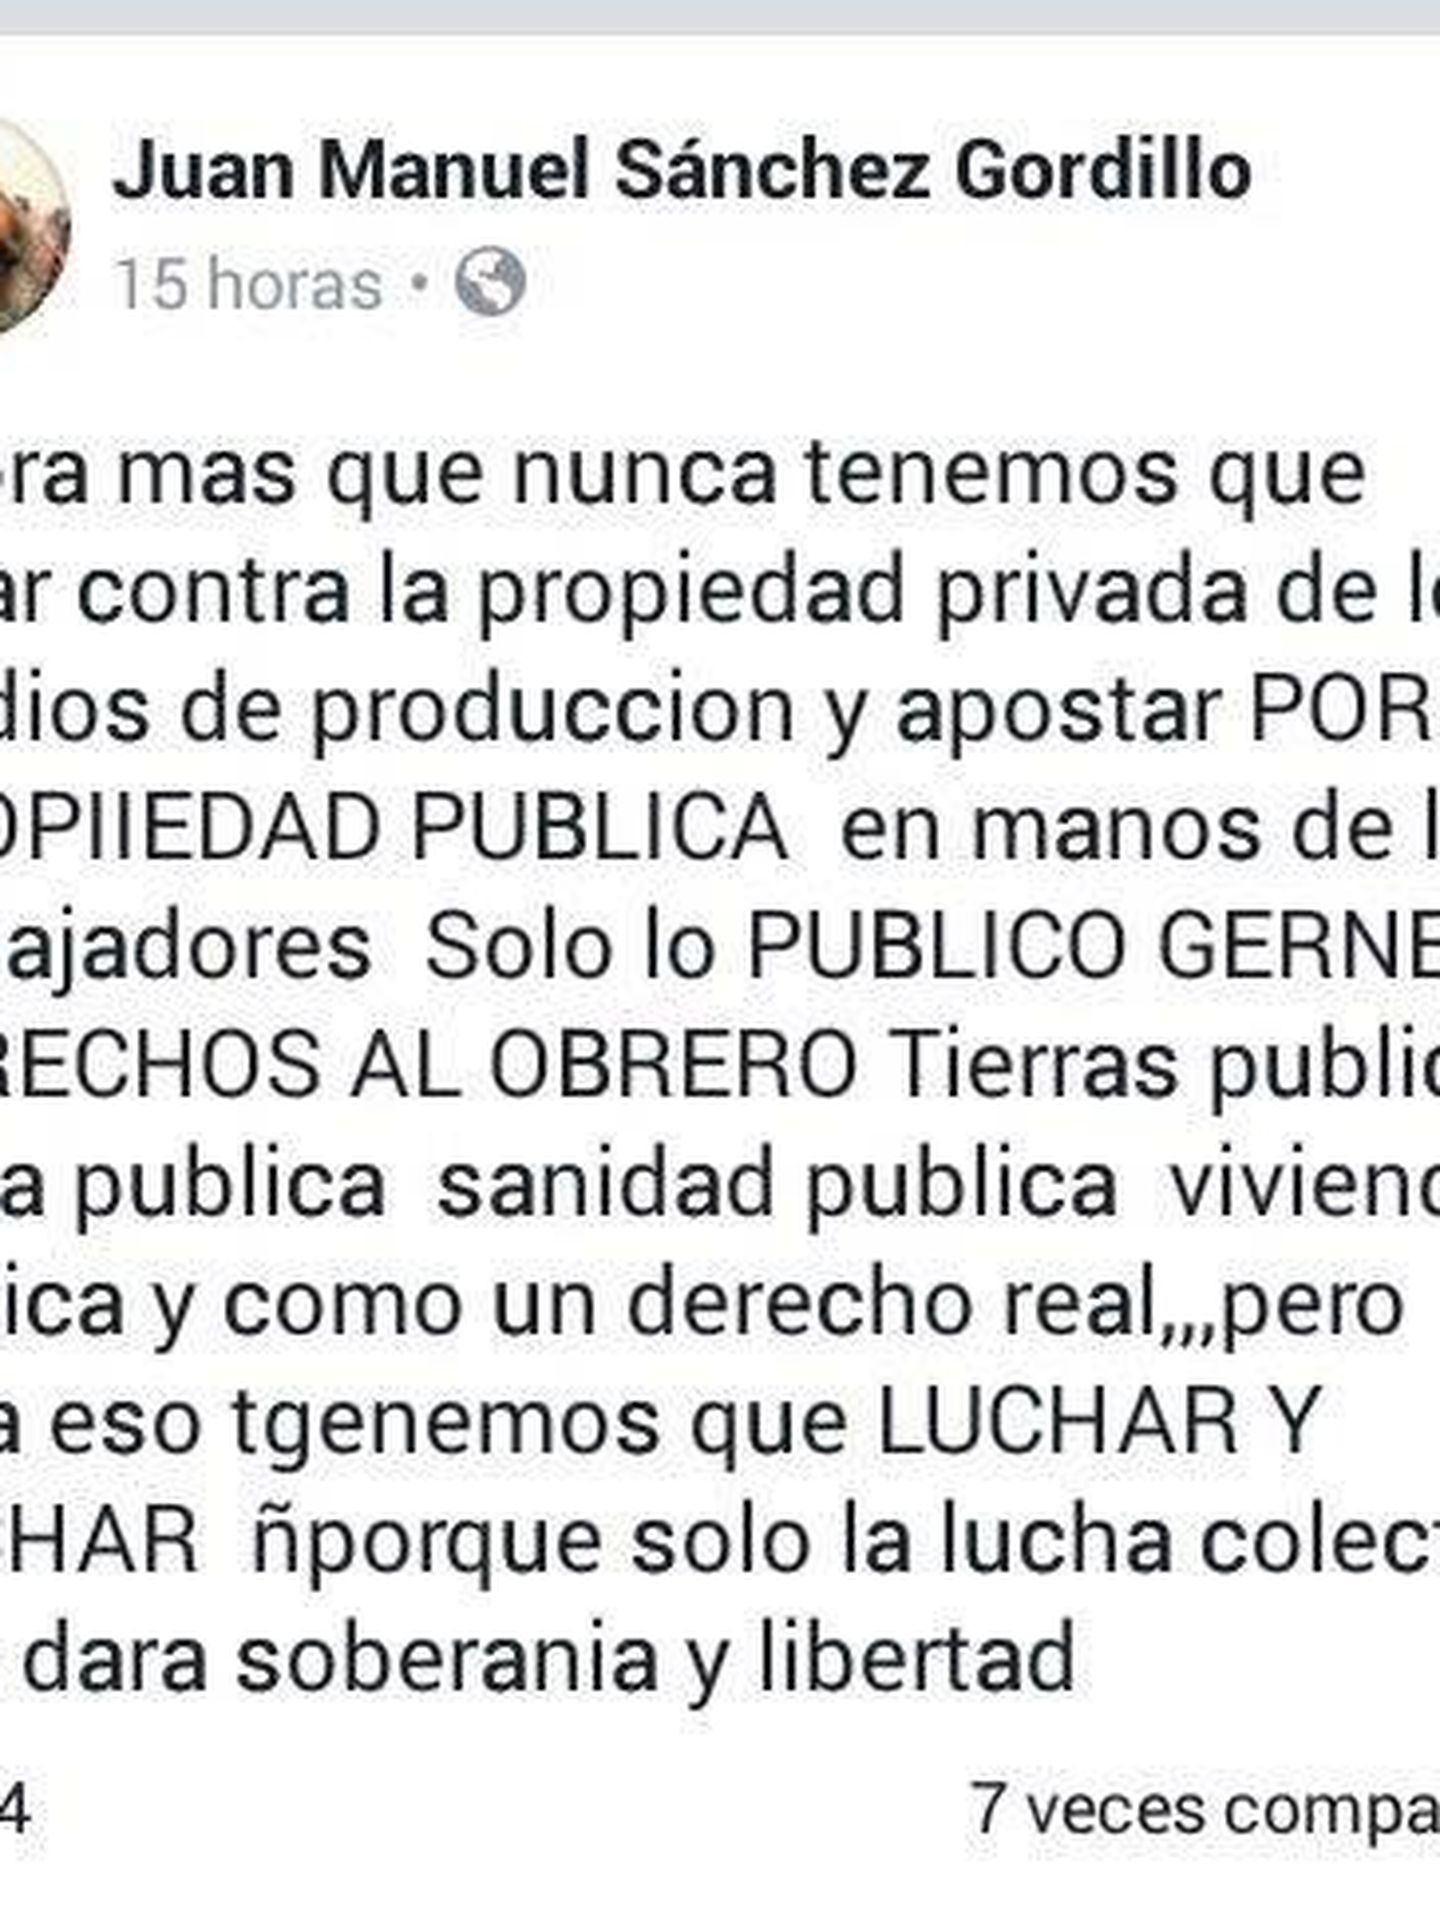 Publicaciones en Facebook de Sánchez Gordillo.